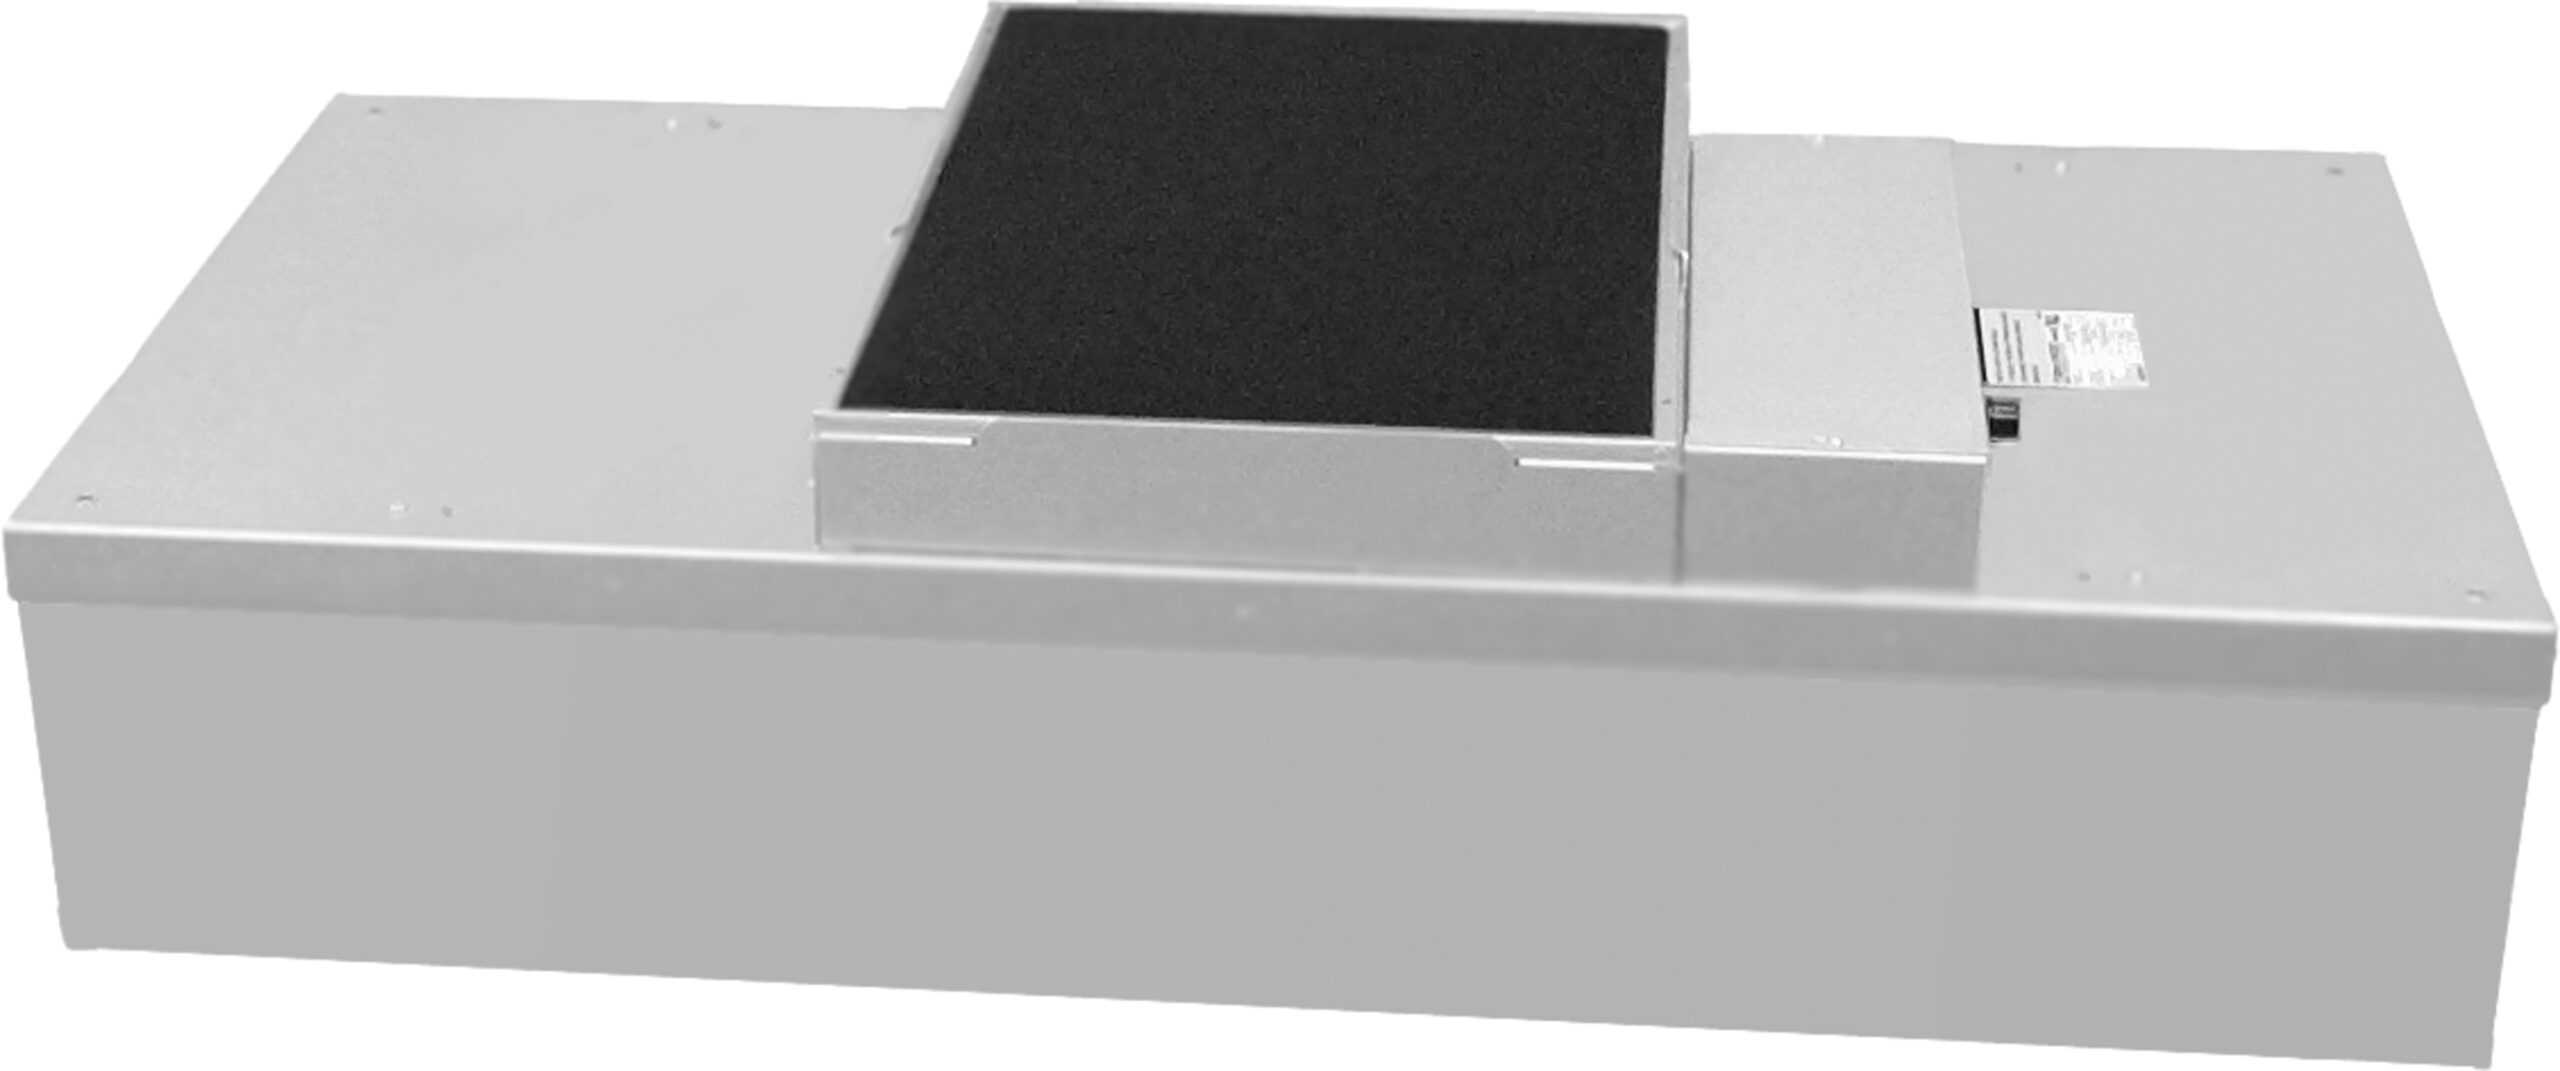 Air Clean Mat - automatische Staubbindematte - Asmetec